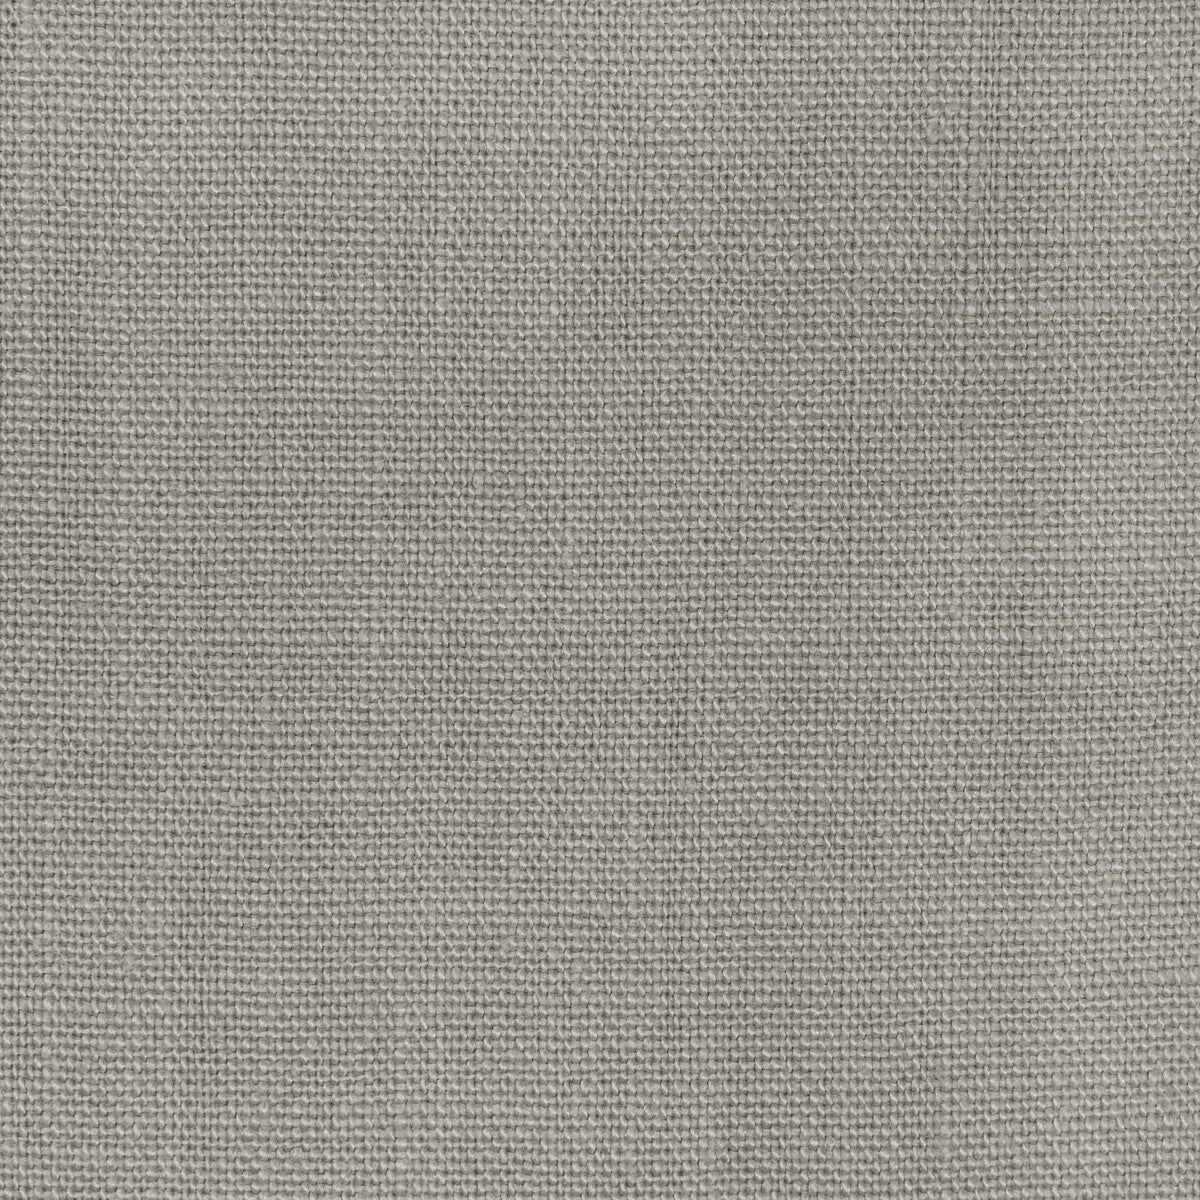 Kravet Basics fabric in 36332-52 color - pattern 36332.52.0 - by Kravet Basics